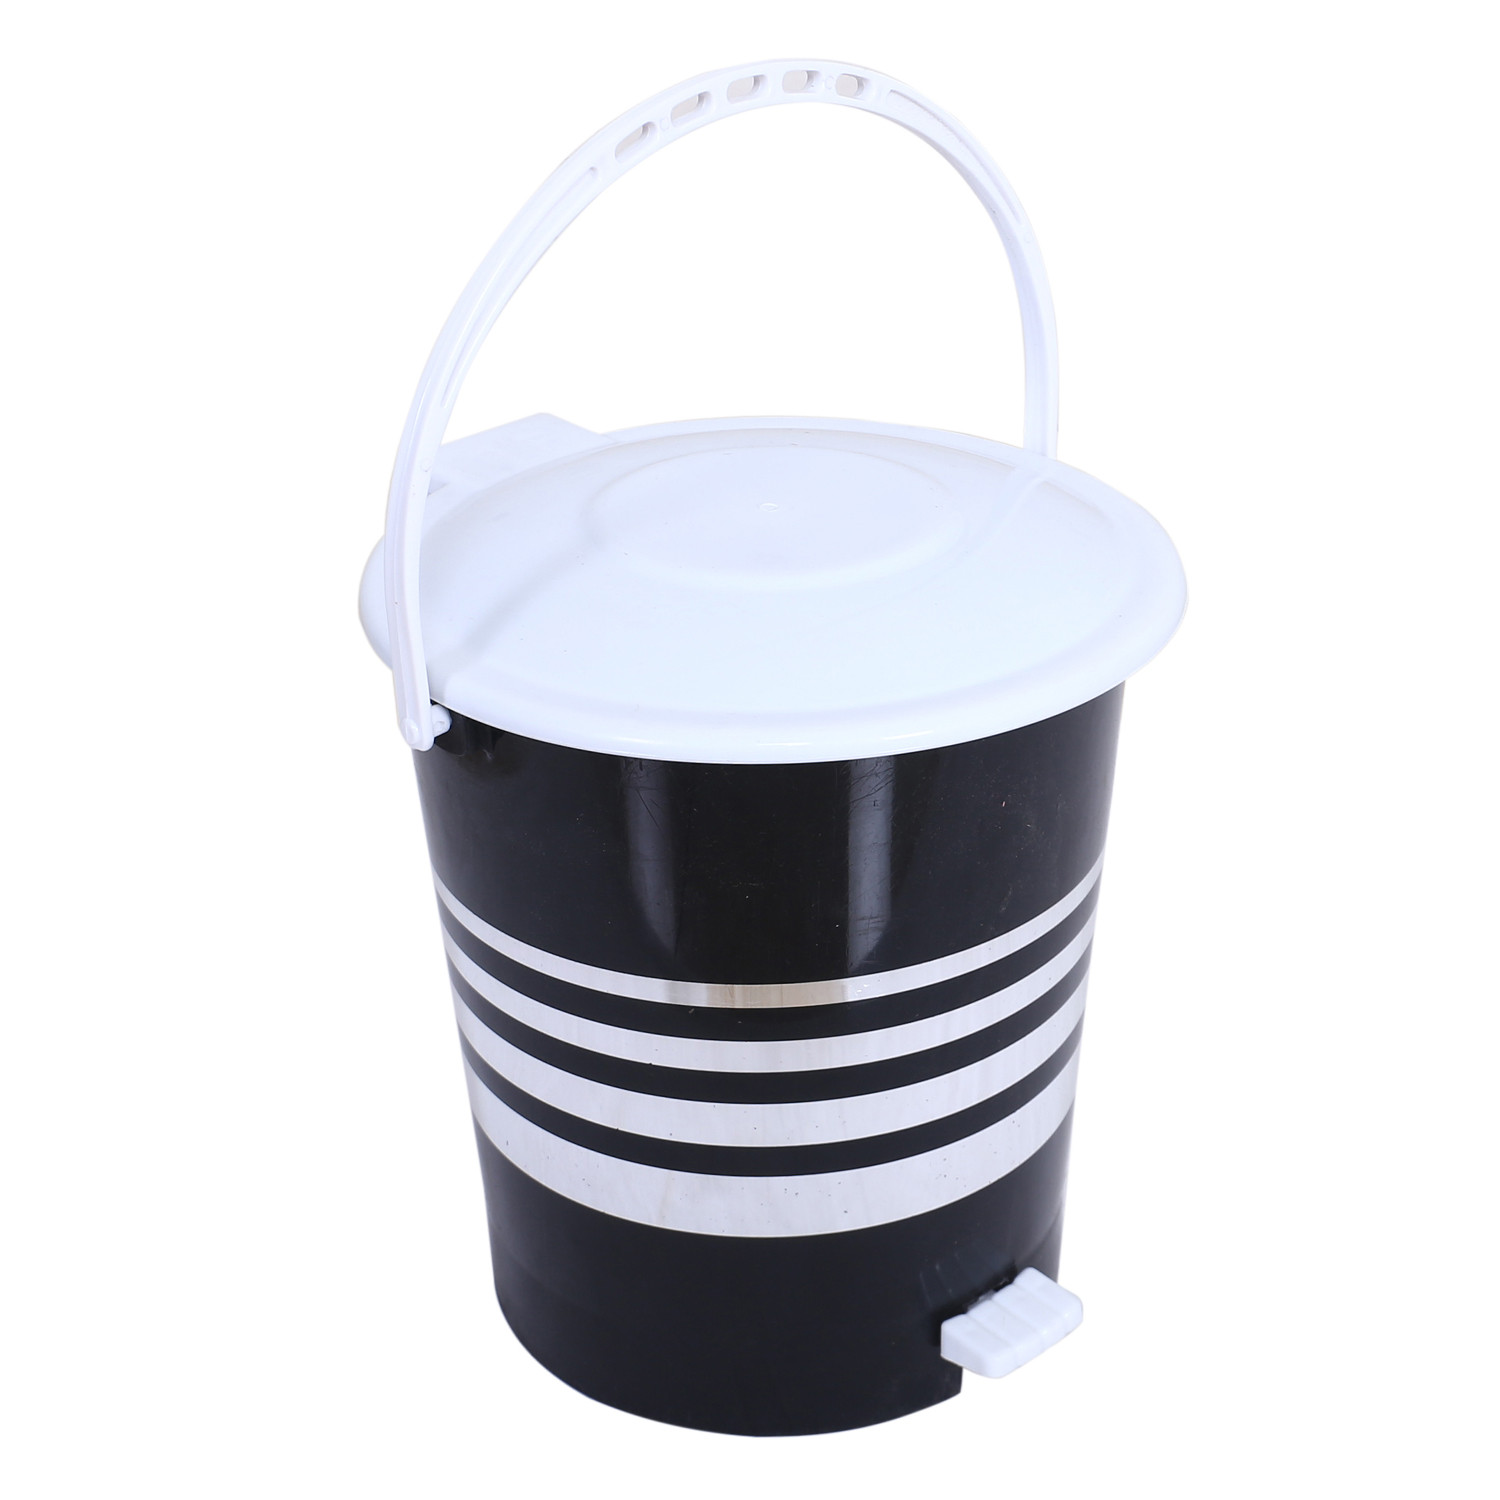 Kuber Industries Dustbin|Plastic Pedal Dustbin|Kitchen Inner Bucket Waste Paper Bin|Dustbin For Bedroom|Silver & Gold Layer 10 Litre Dustbin|Pack of 2 (Black)